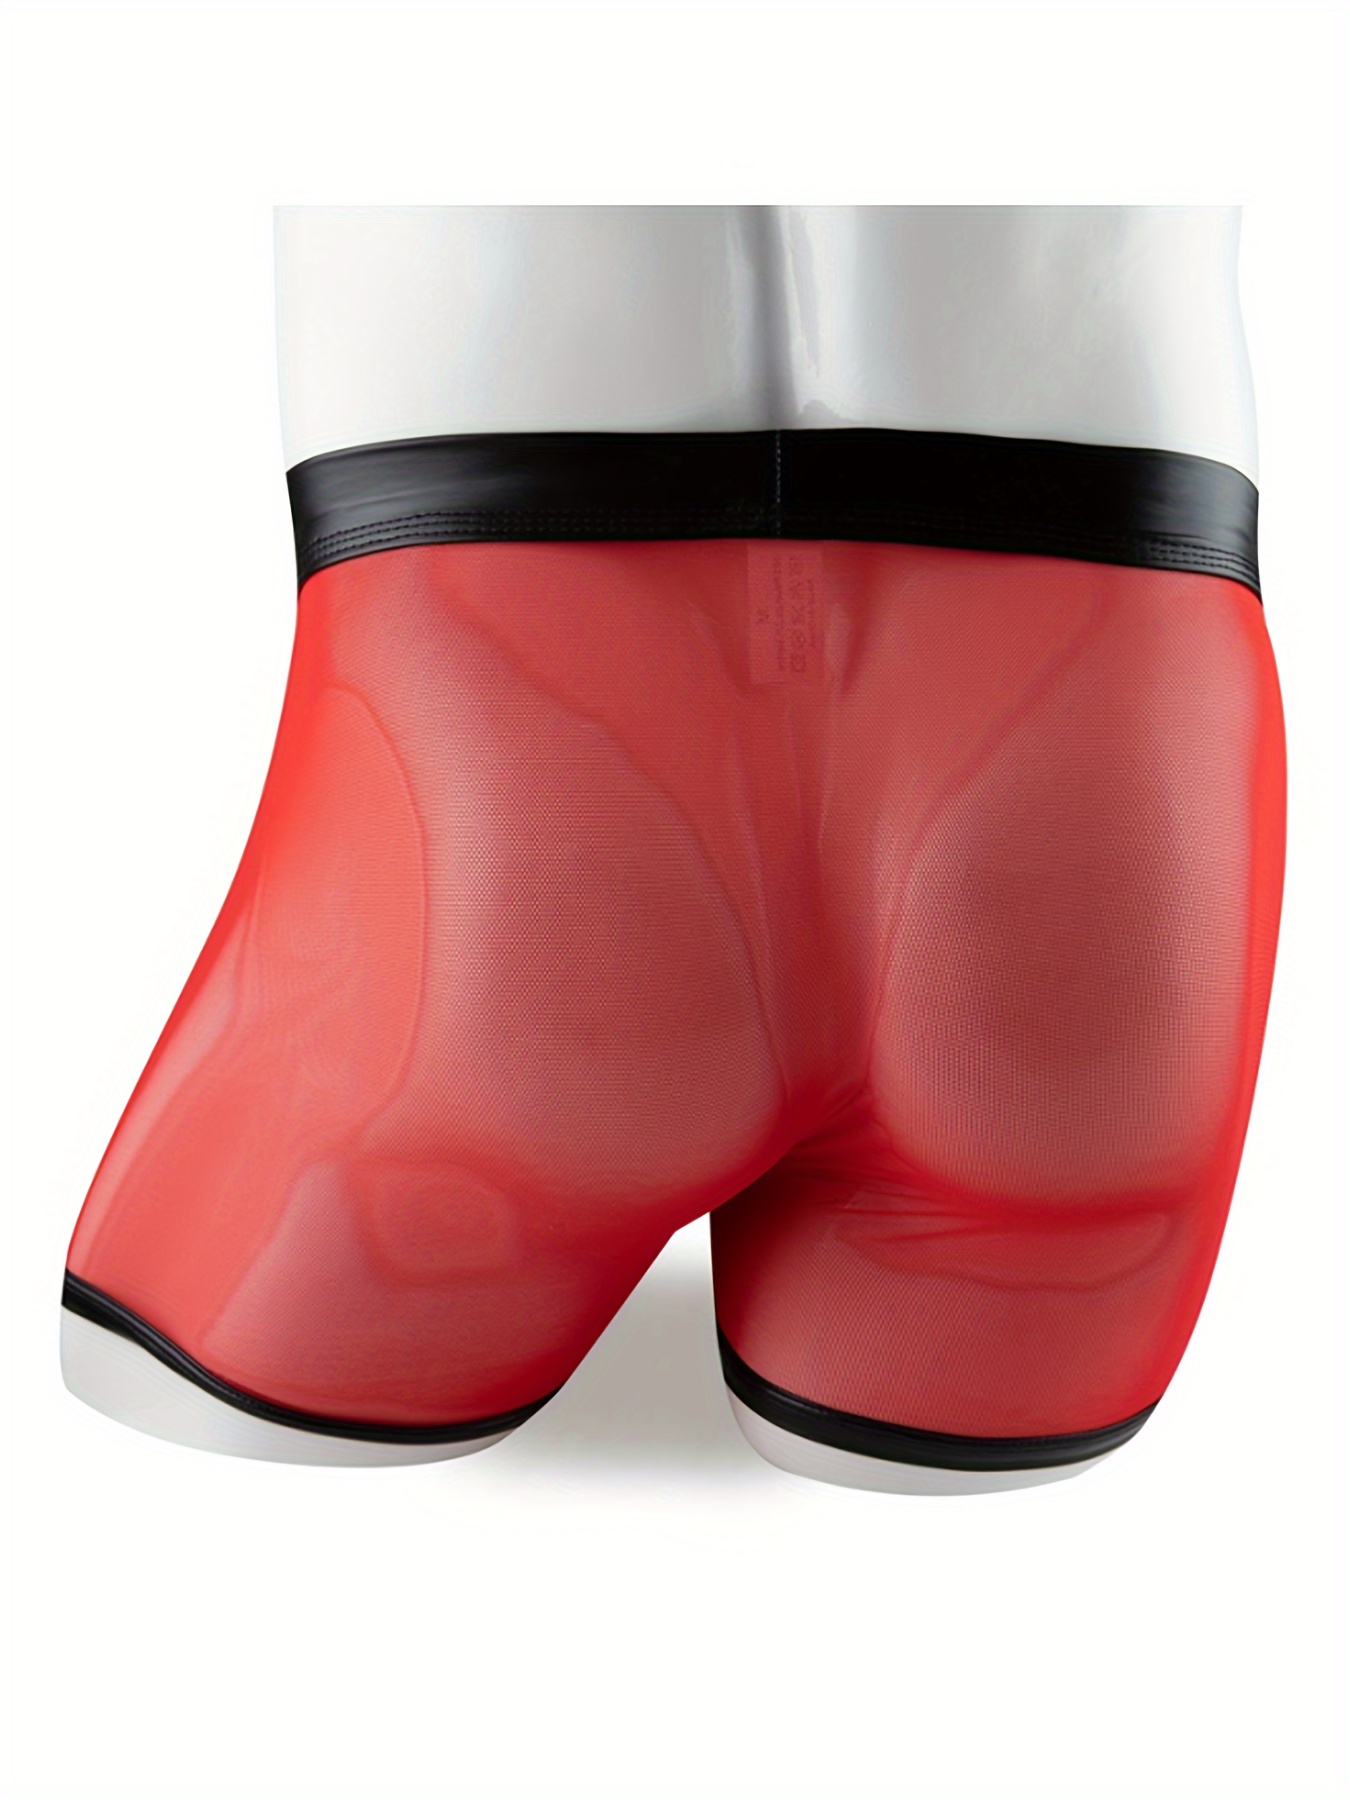 Men Long Underpants Boxers Short Panties Underwear Faux Leather Mesh Solid  Color